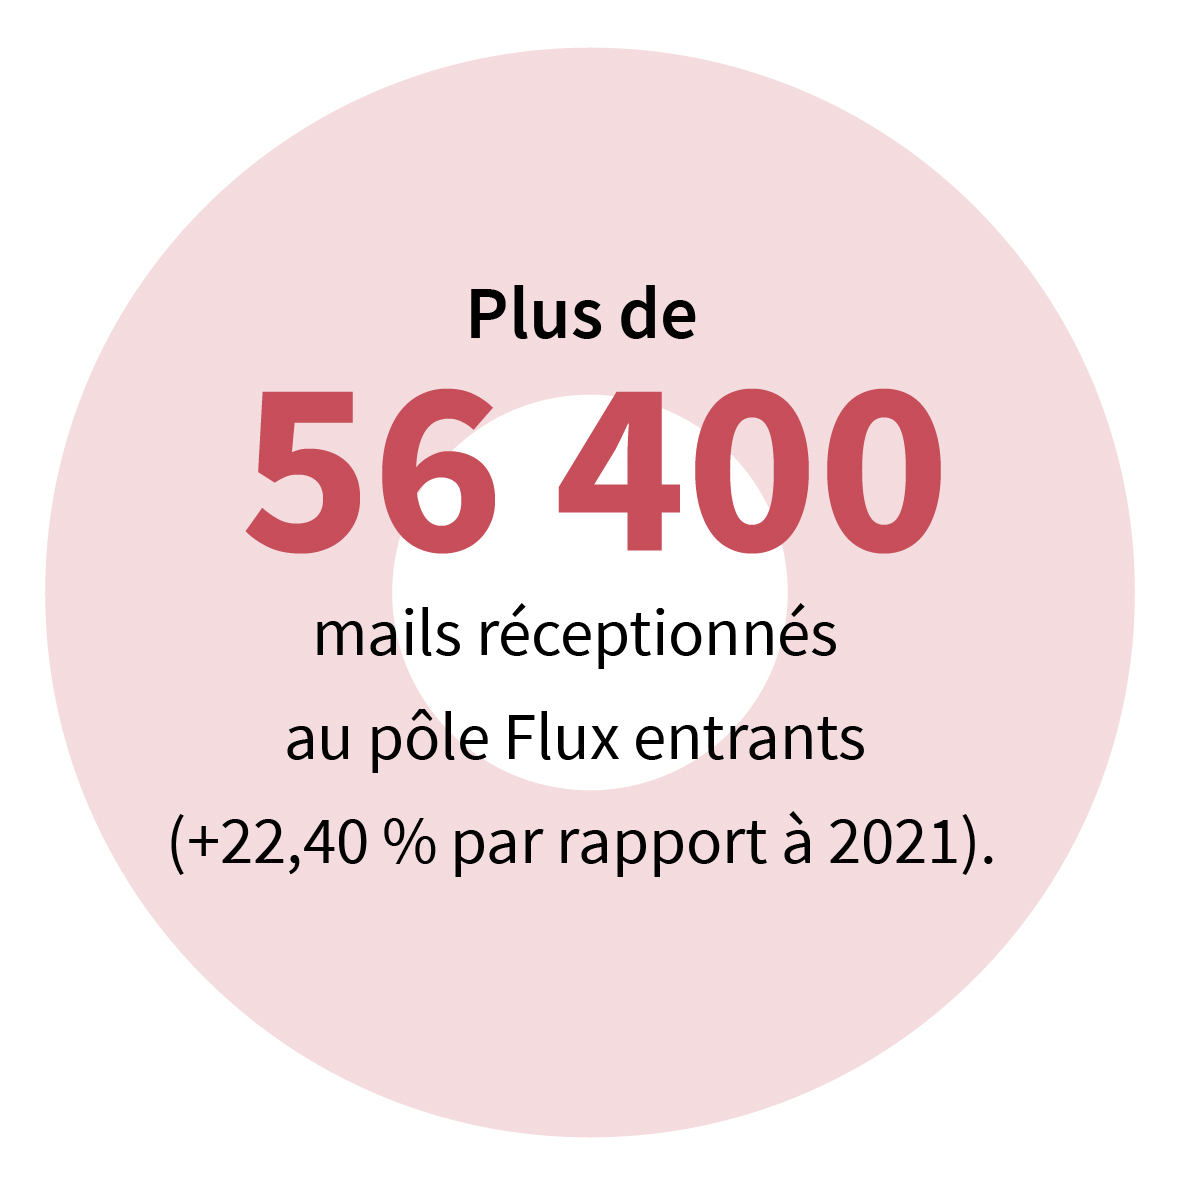 Plus de 56 400 mails réceptionnés au pôle Flux entrants (+ 22,40 % par rapport à 2021).